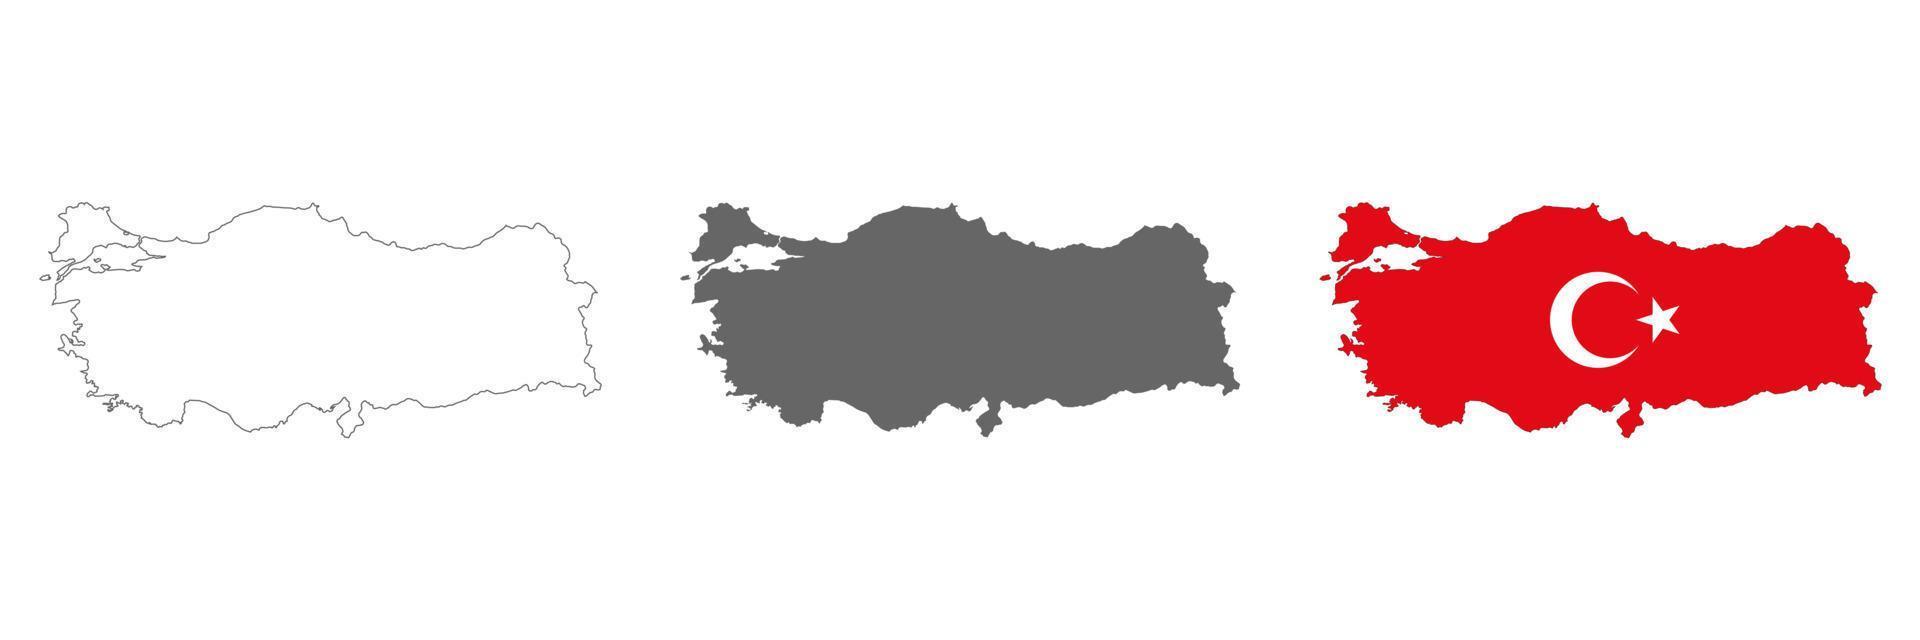 Mapa de Turquía muy detallado con bordes aislados en segundo plano. vector